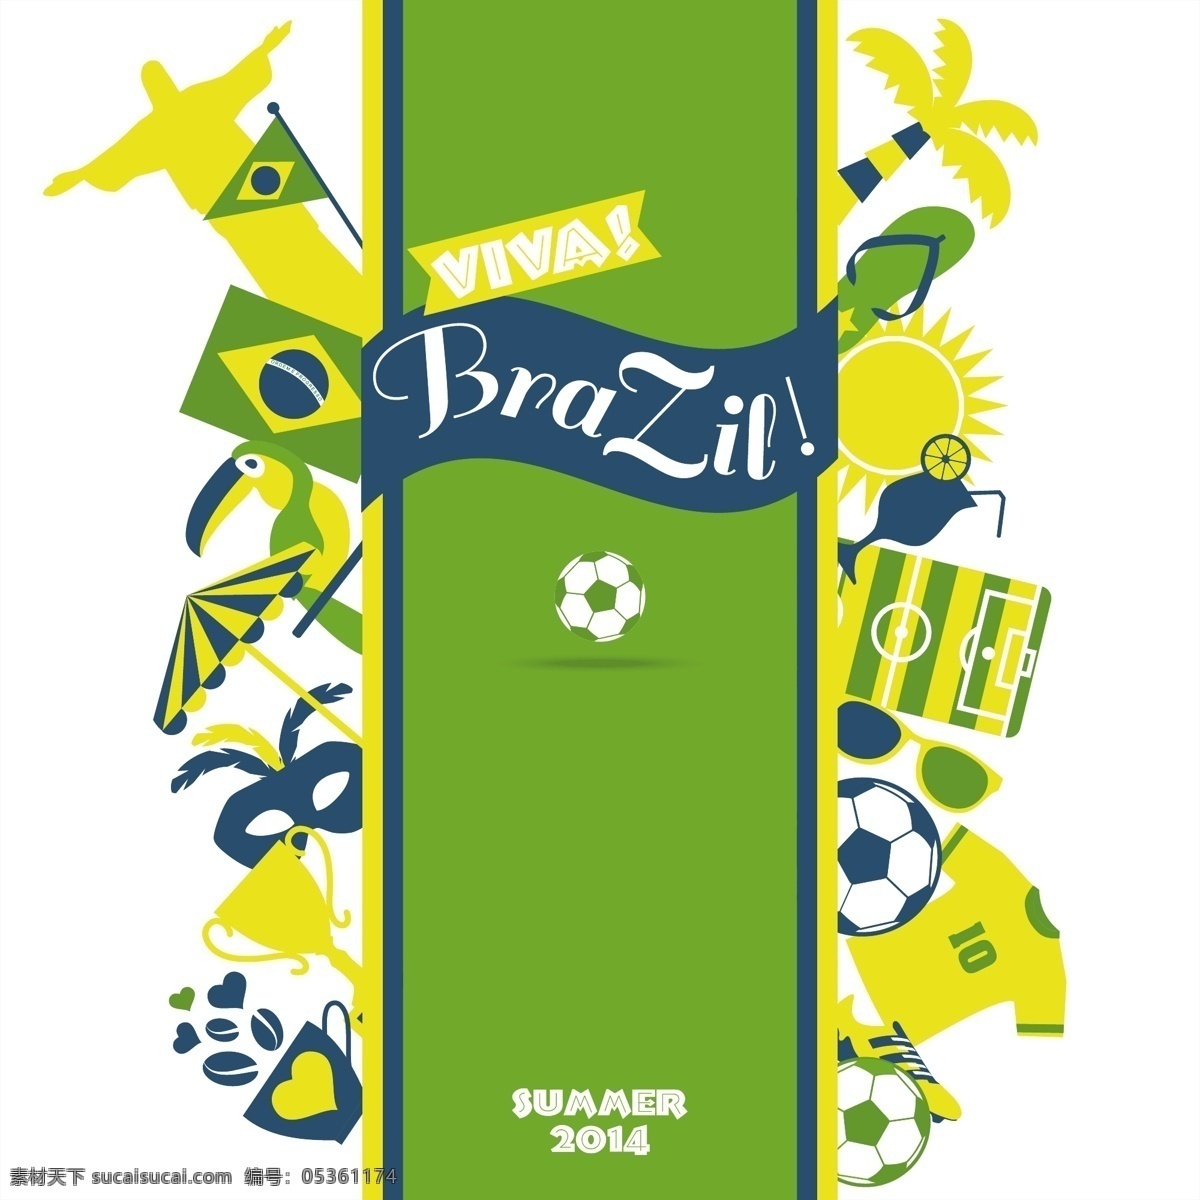 绿色 巴西 景区 背景 模板下载 神父雕像 椰子树 世界杯 足球 体育运动 生活百科 矢量素材 白色